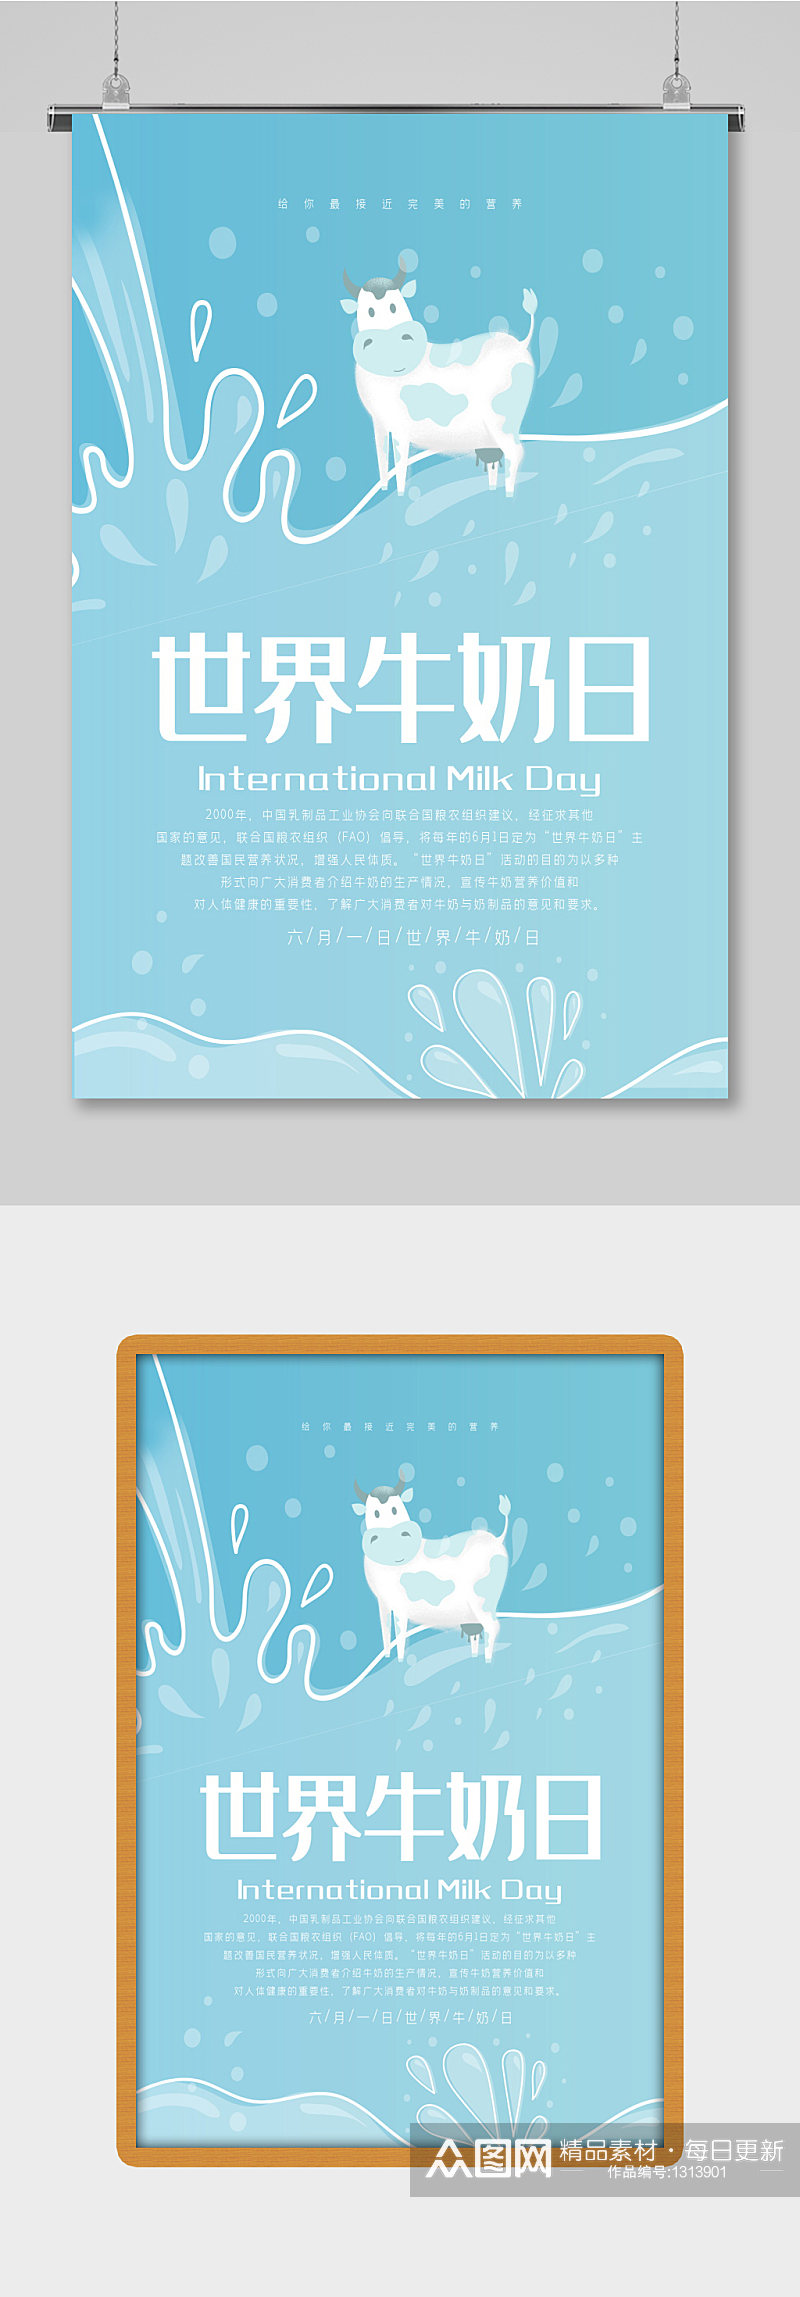 清新六一世界牛奶日宣传 国际世界牛奶日海报素材